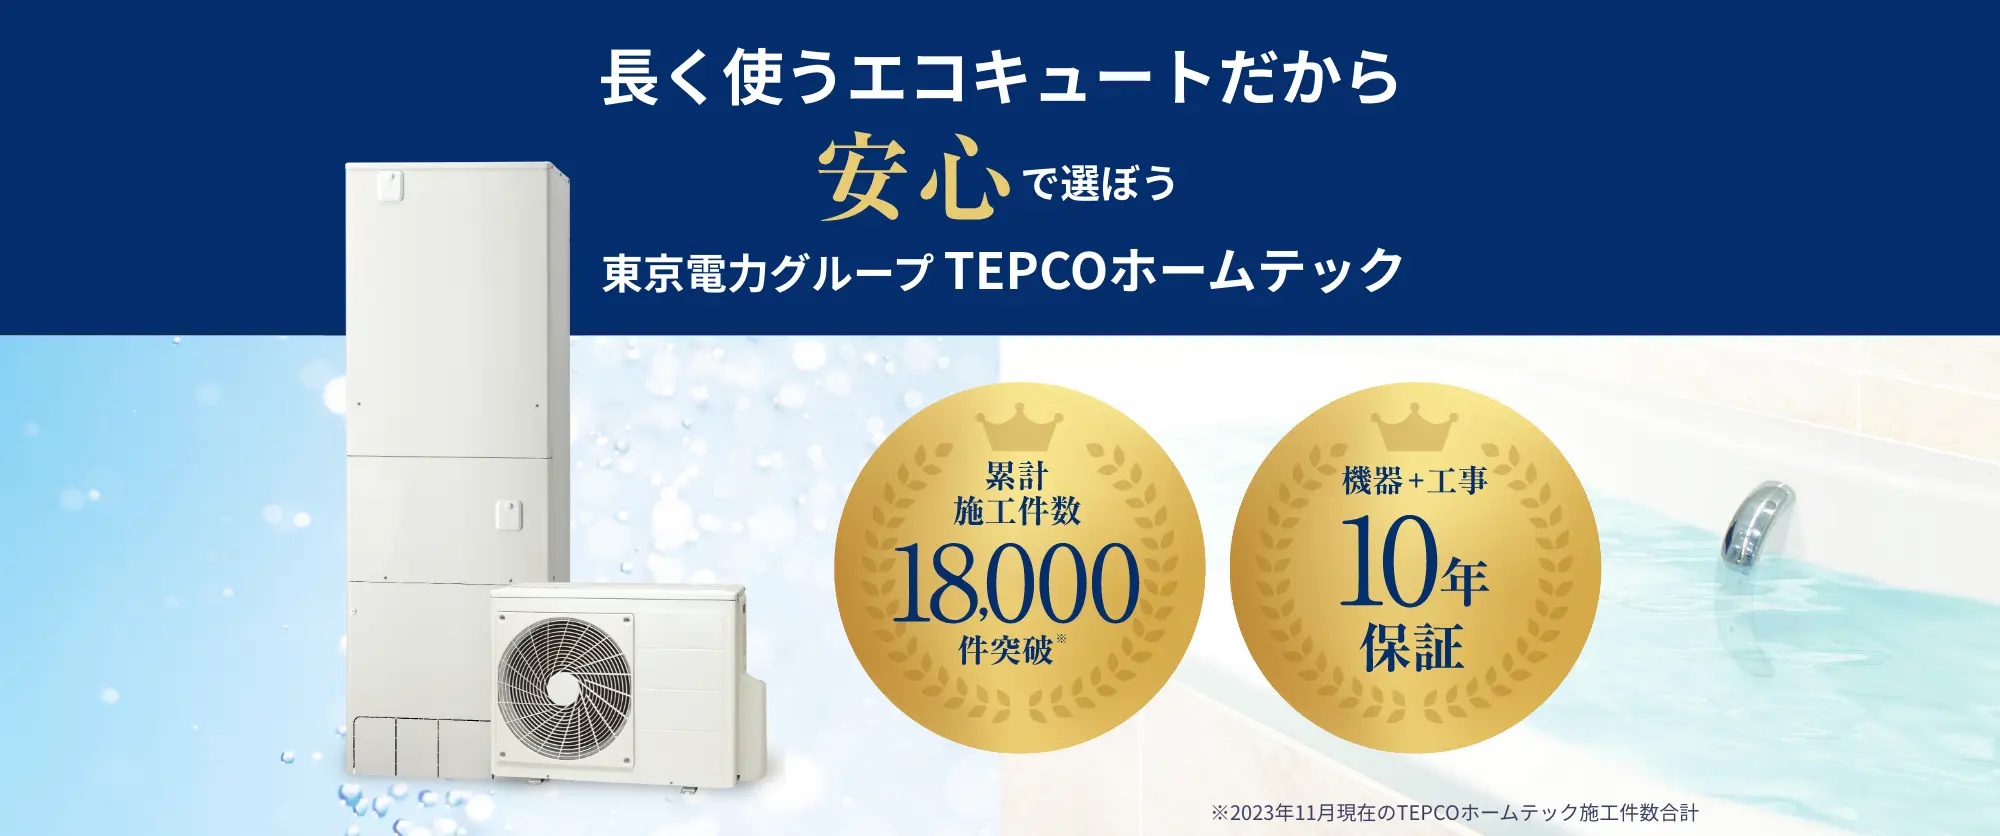 
                            長く使うエコキュートだから
                            安心で選ぼう
                            東京電力グループ TEPCOホームテック
                            累計施工件数18,000件突破
                            機器+工事
                            10年保証
                        